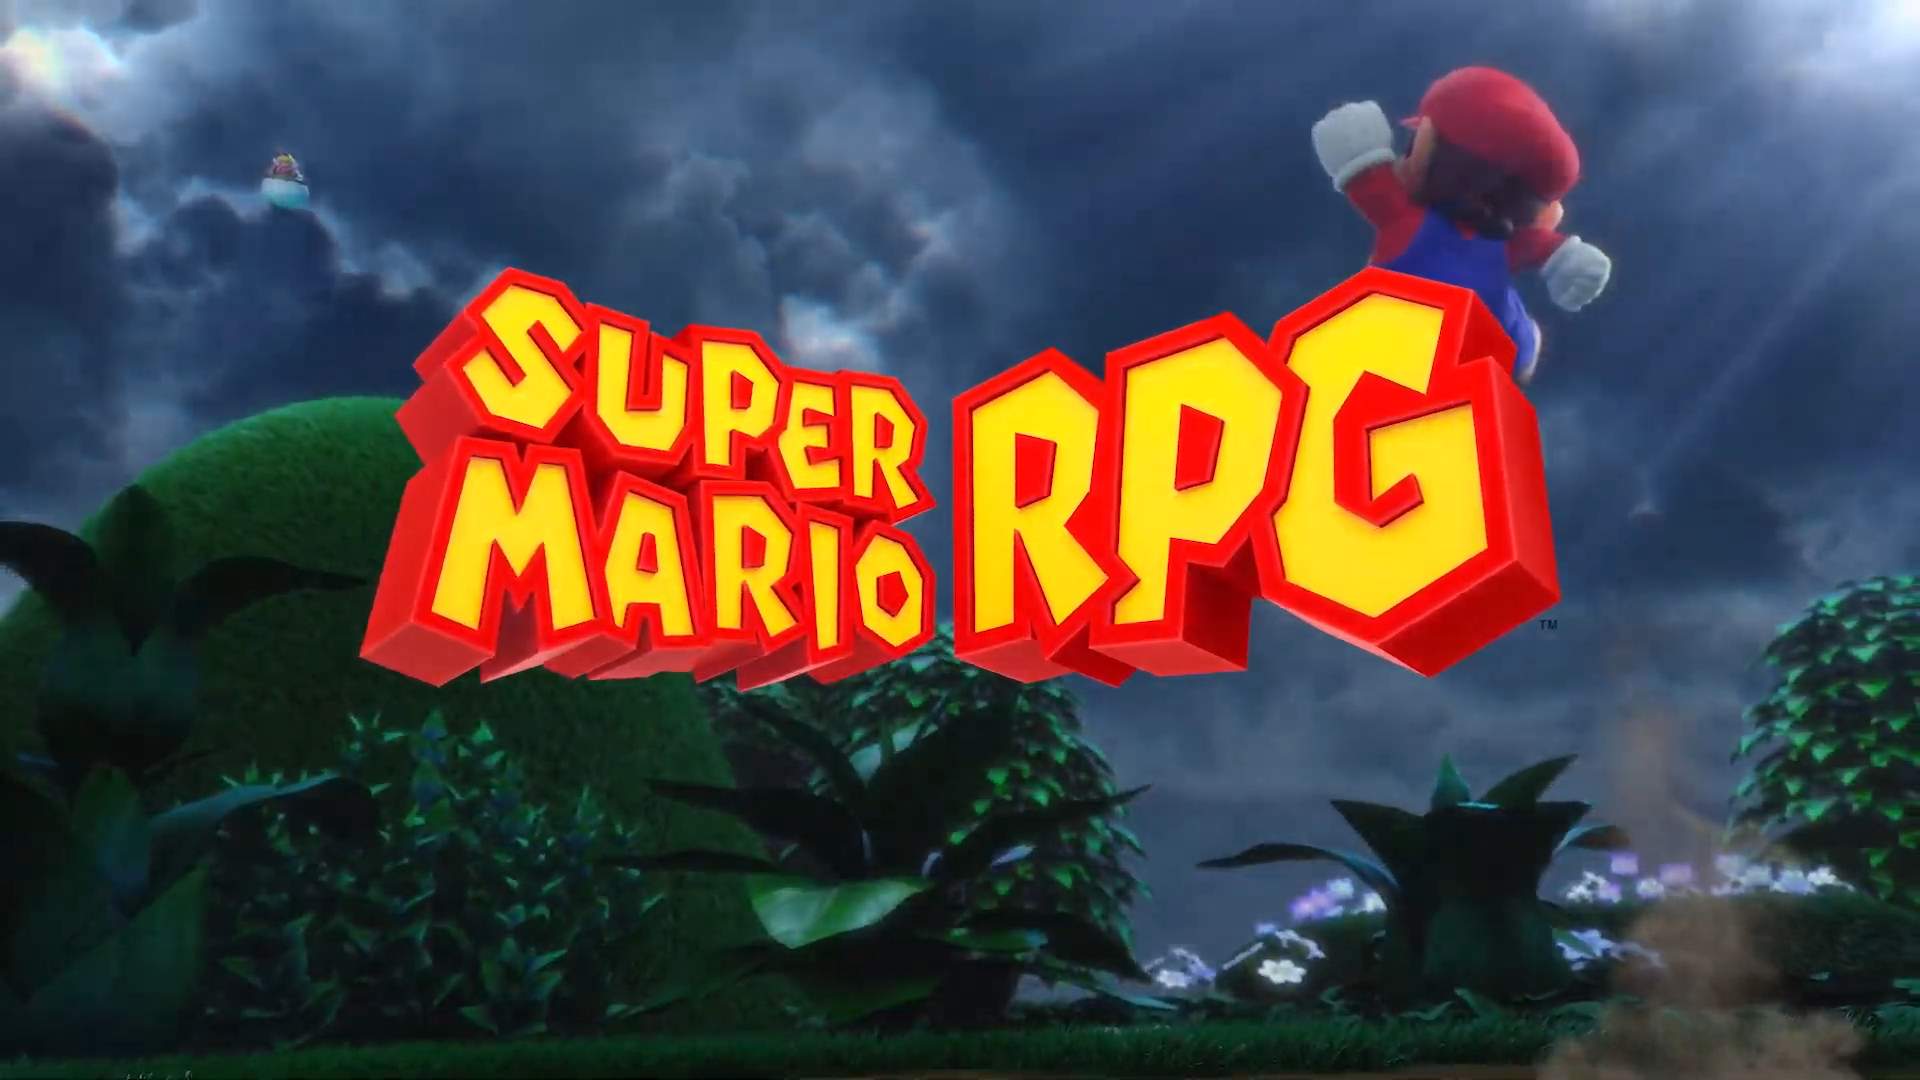 Pode-se baixar manual completo grátis de Super Mario RPG seguindo esses  passos – Metro World News Brasil